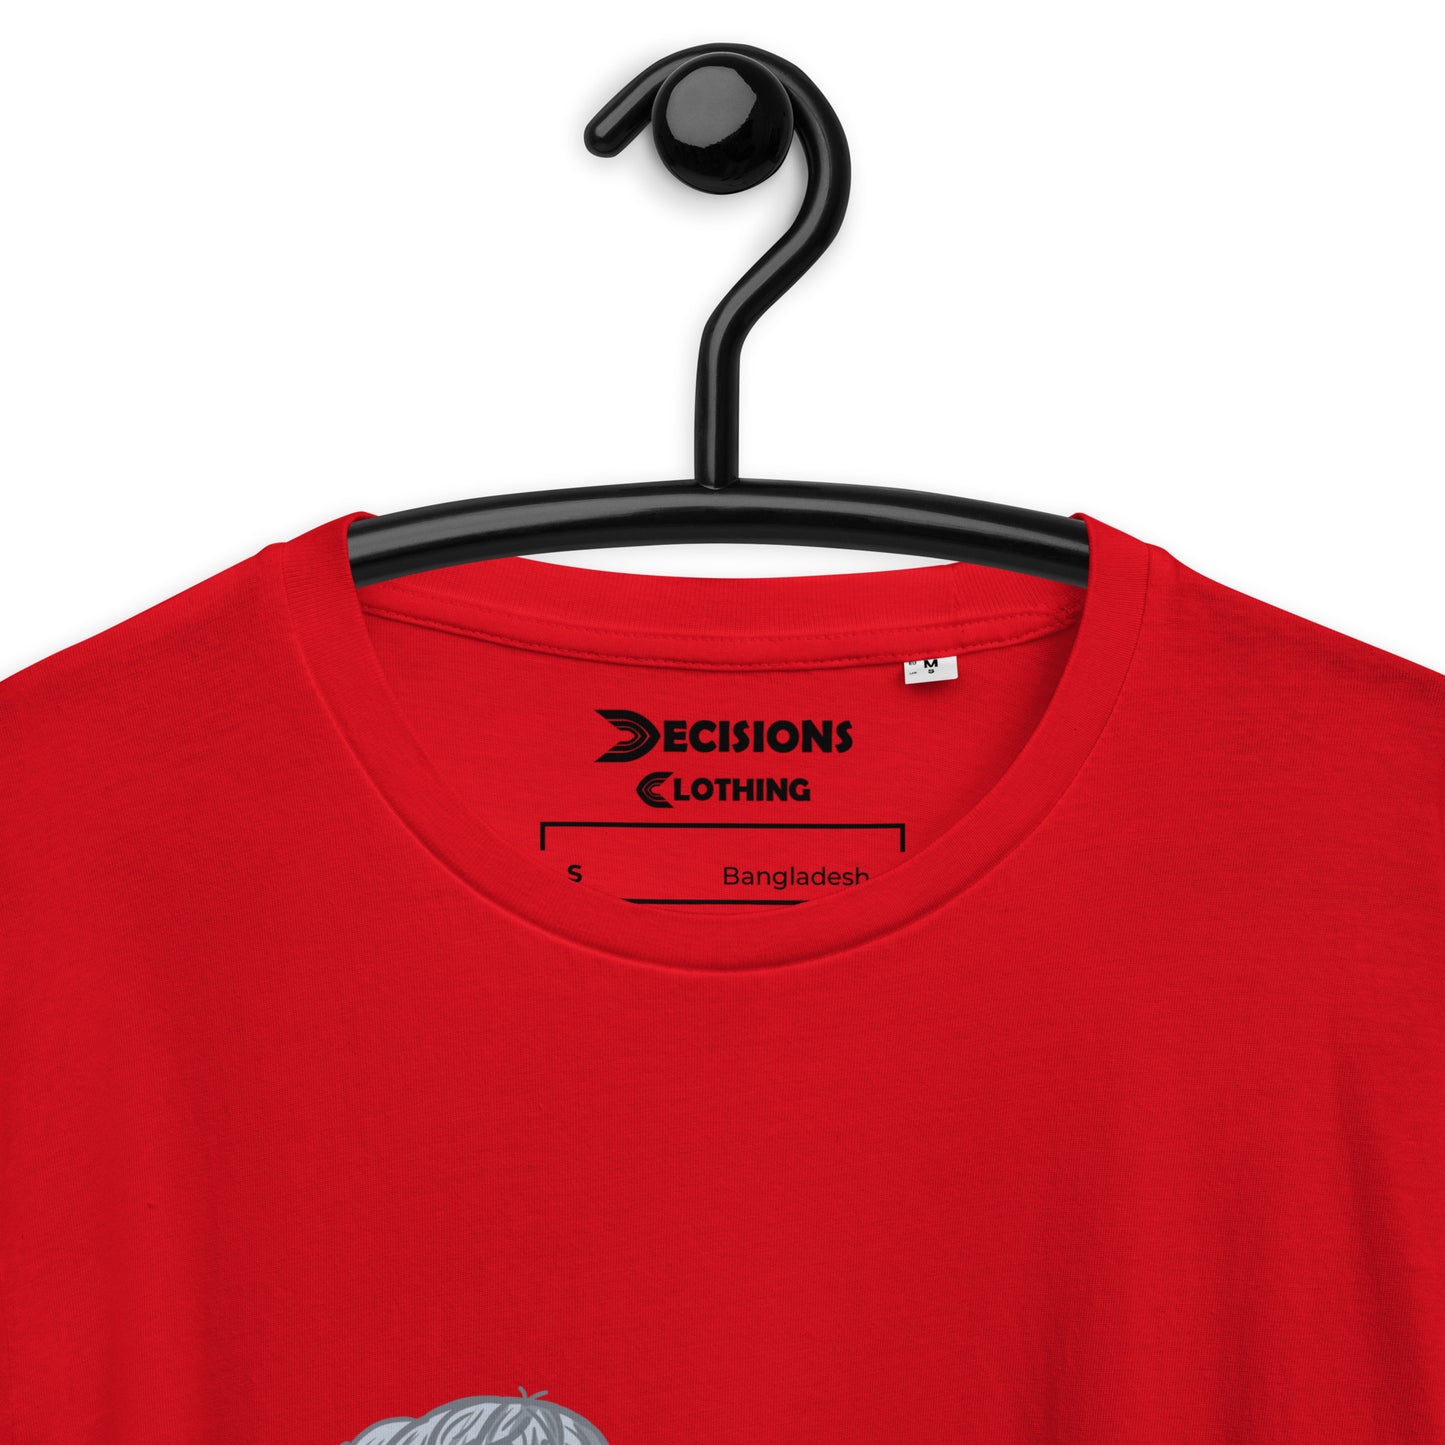 Valkyrie Nessie T-Shirt (Apex Legends)